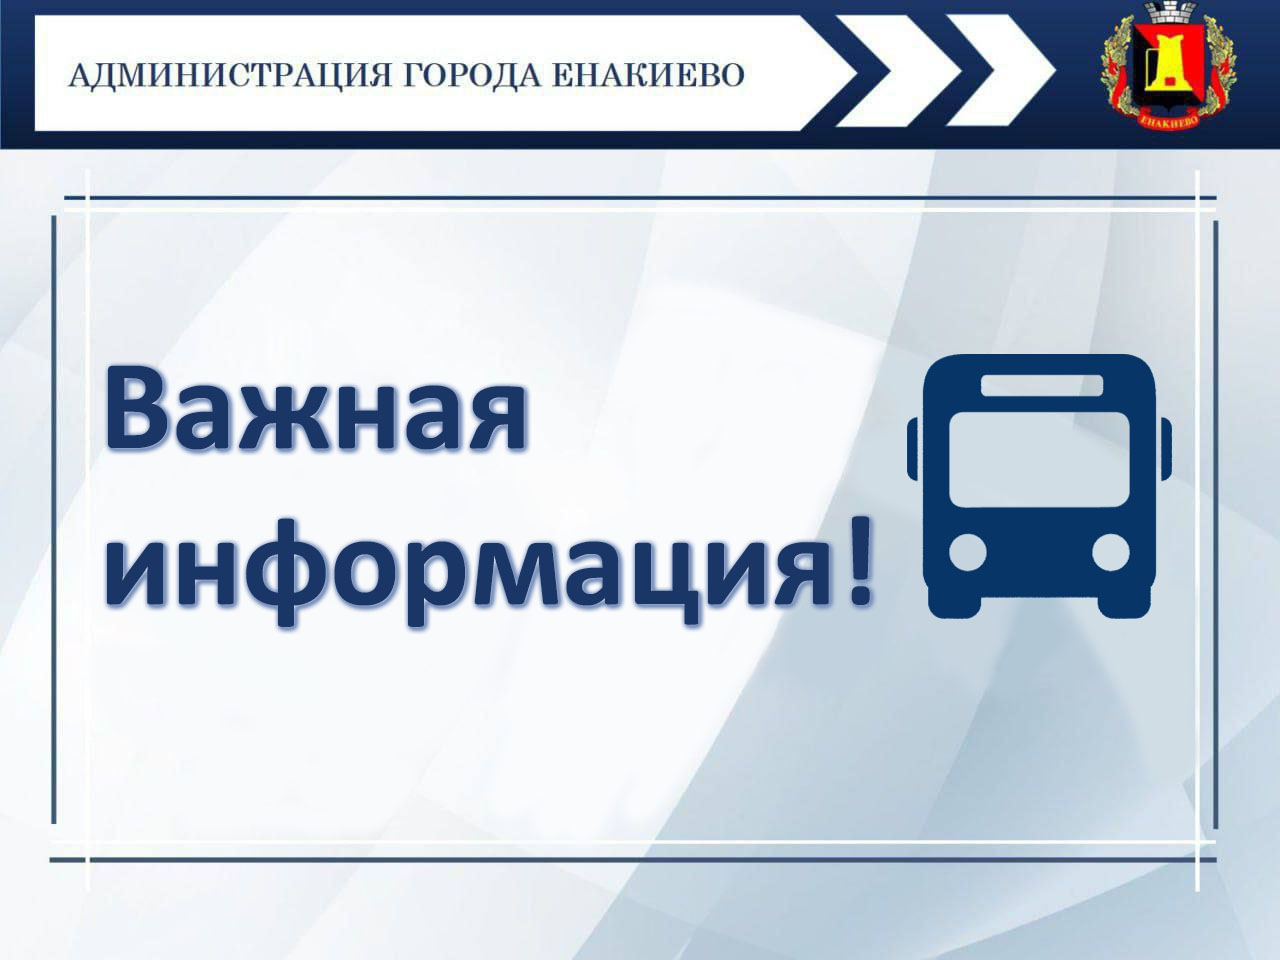 Расписание движения автобусов по городскому автобусному маршруту общего пользования № 24 «Енакиево – пгт. Ольховатка».